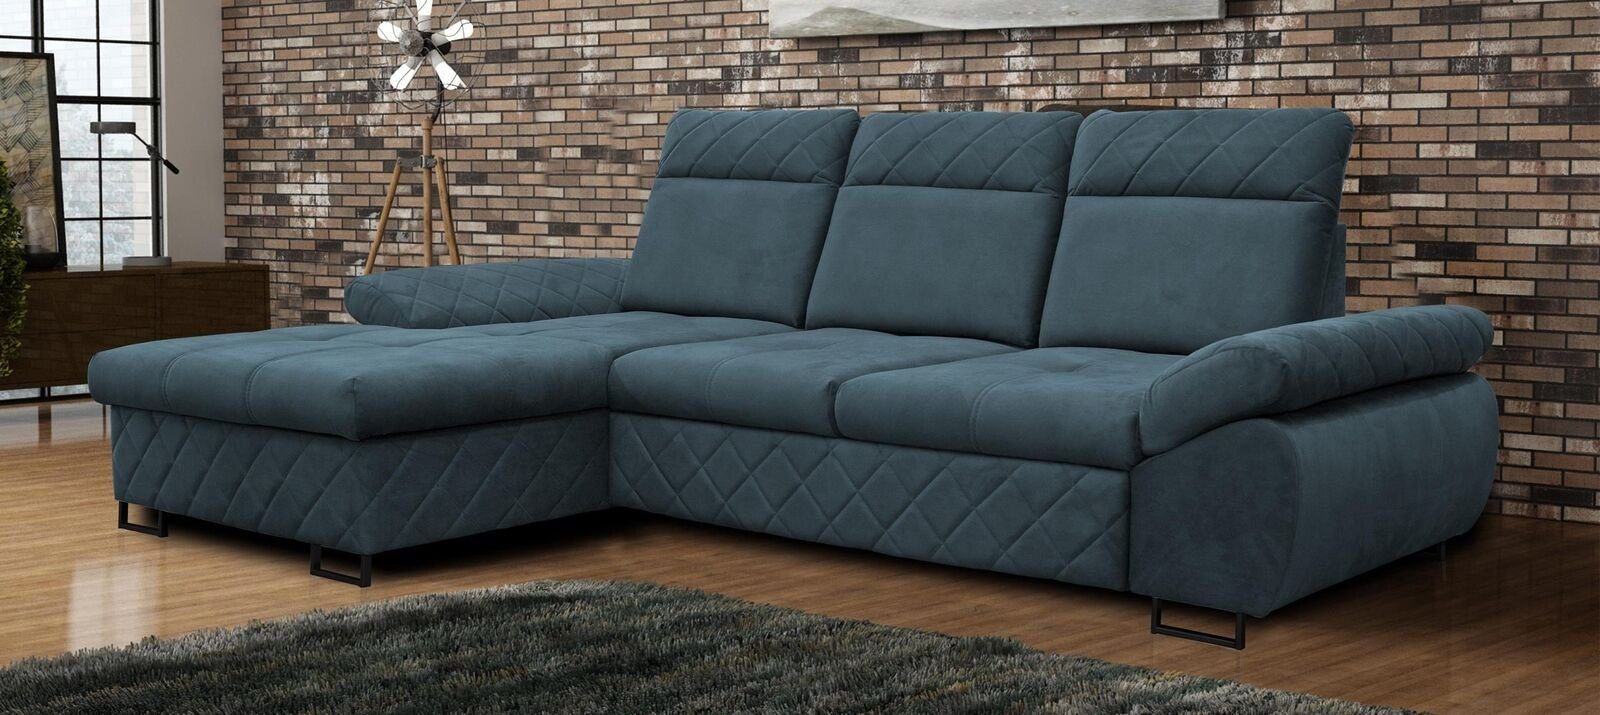 JVmoebel Ecksofa Wohnzimmer Textil L-Form Sofas Braune Ecksofa Couch Polstermöbel, Mit Bettfunktion Blau